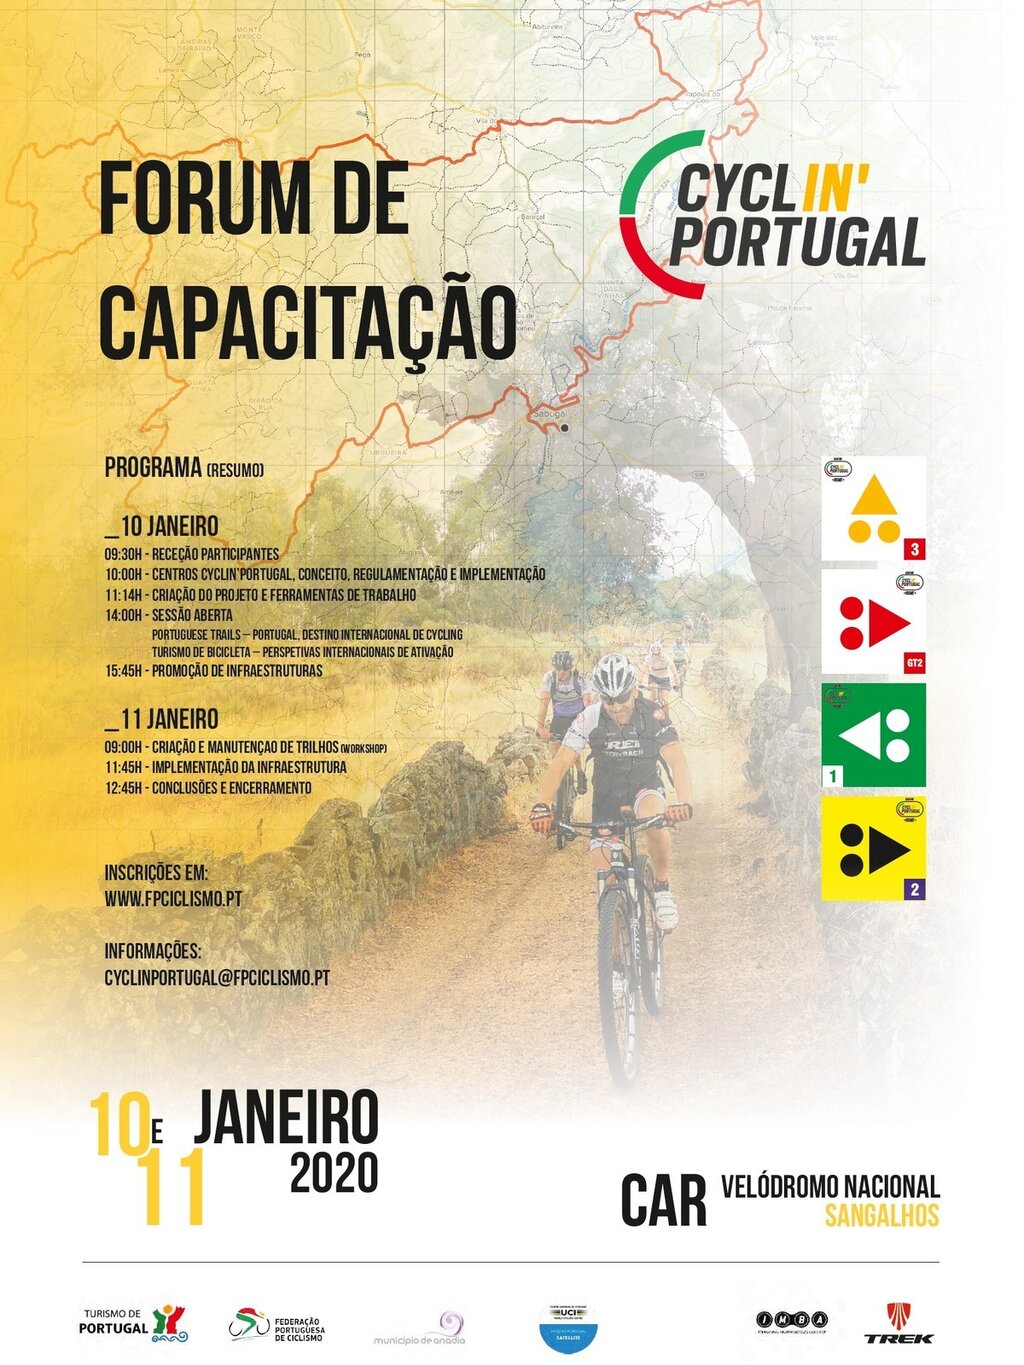 CYCLIN` PORTUGAL - FORUM DE CAPACITAÇÃO